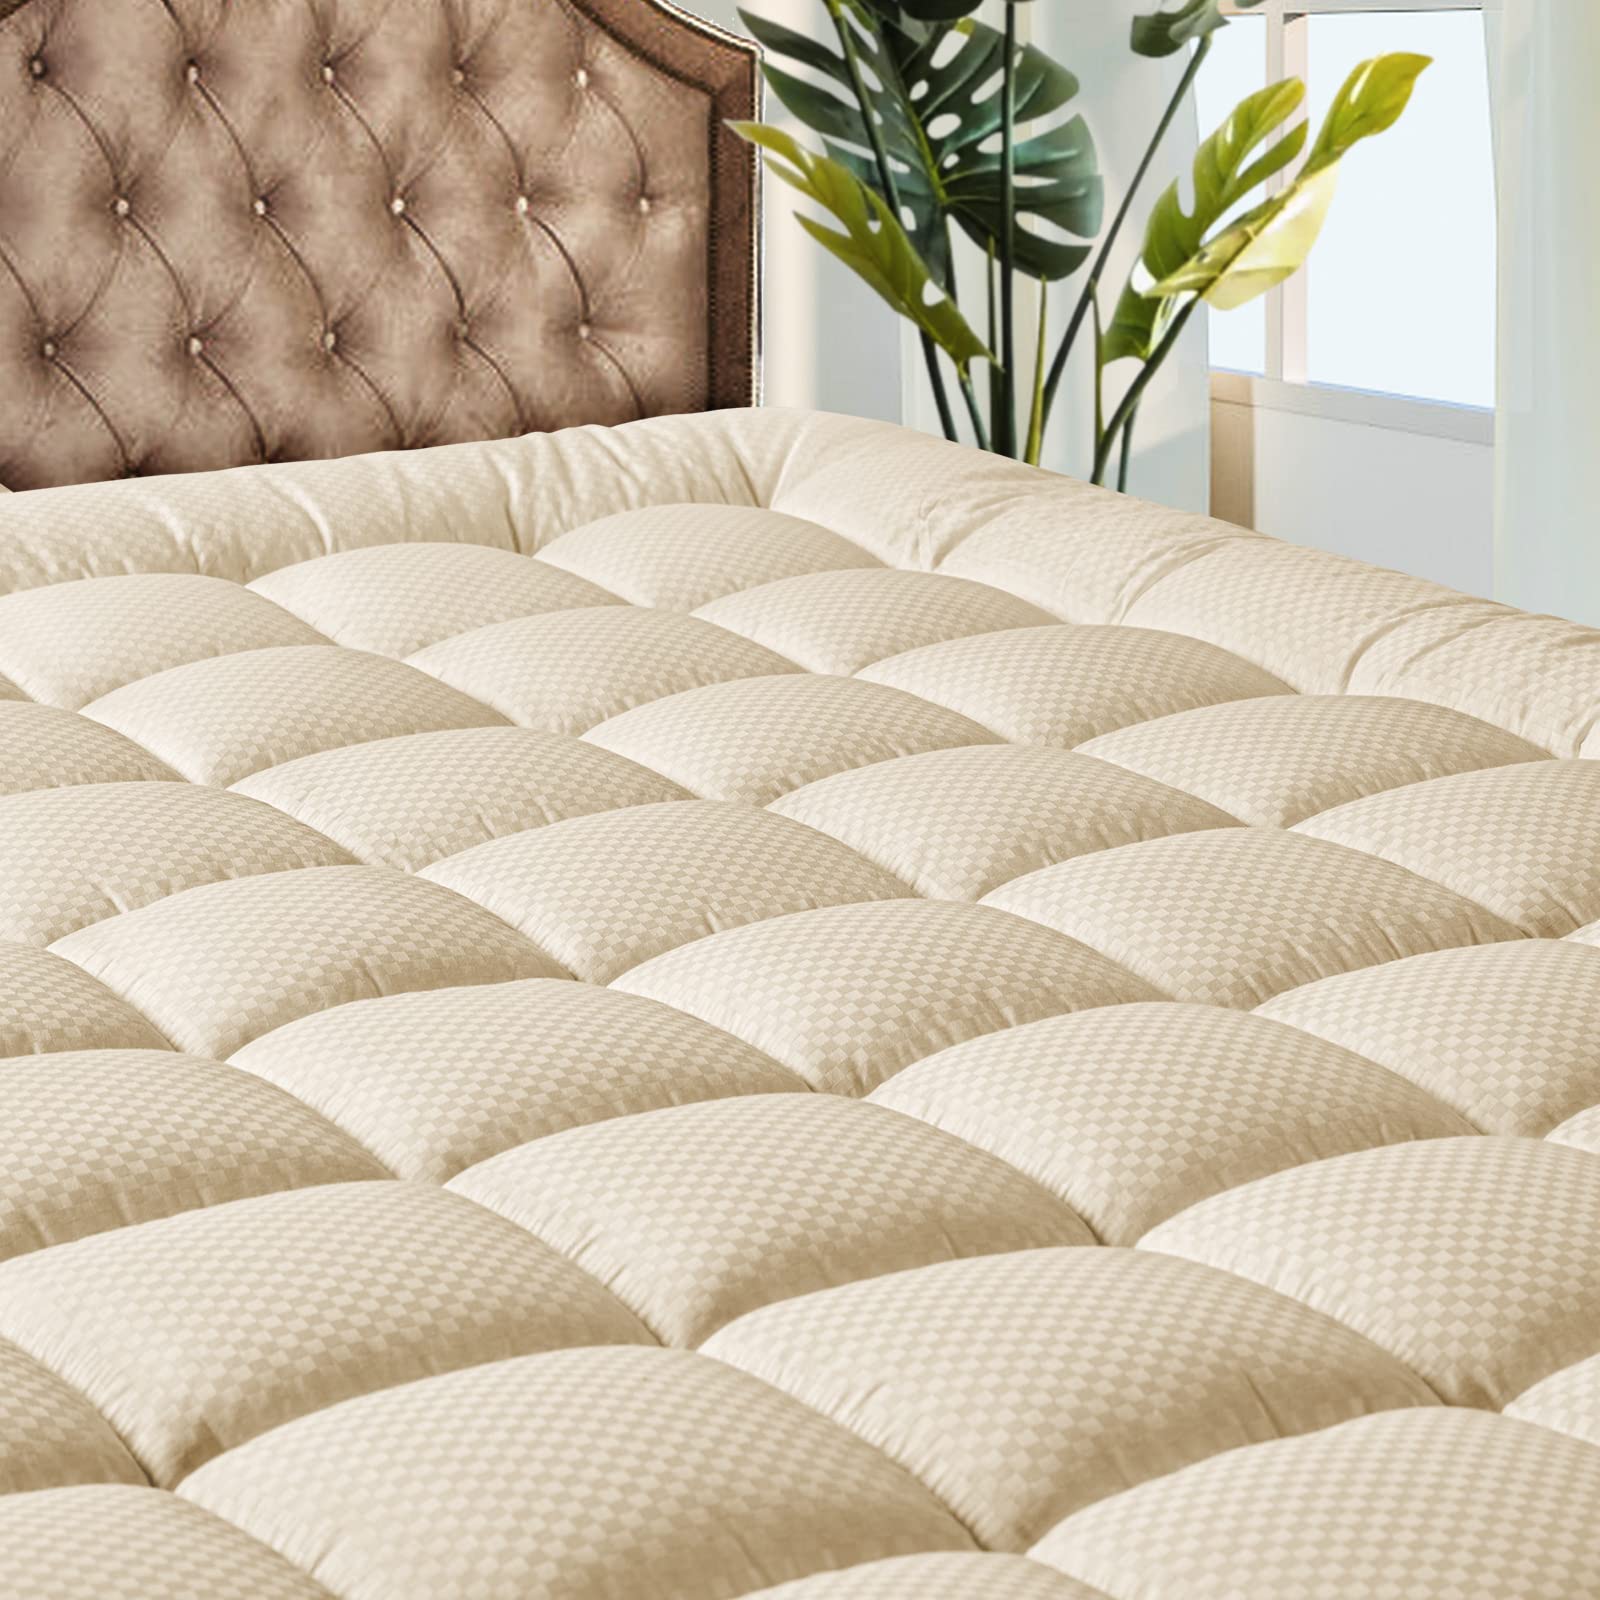 MATBEBY 床上用品绗缝床垫垫冷却透气蓬松柔软床垫垫可拉伸至 21 英寸深，多种尺寸，白色，床垫罩床垫保护罩